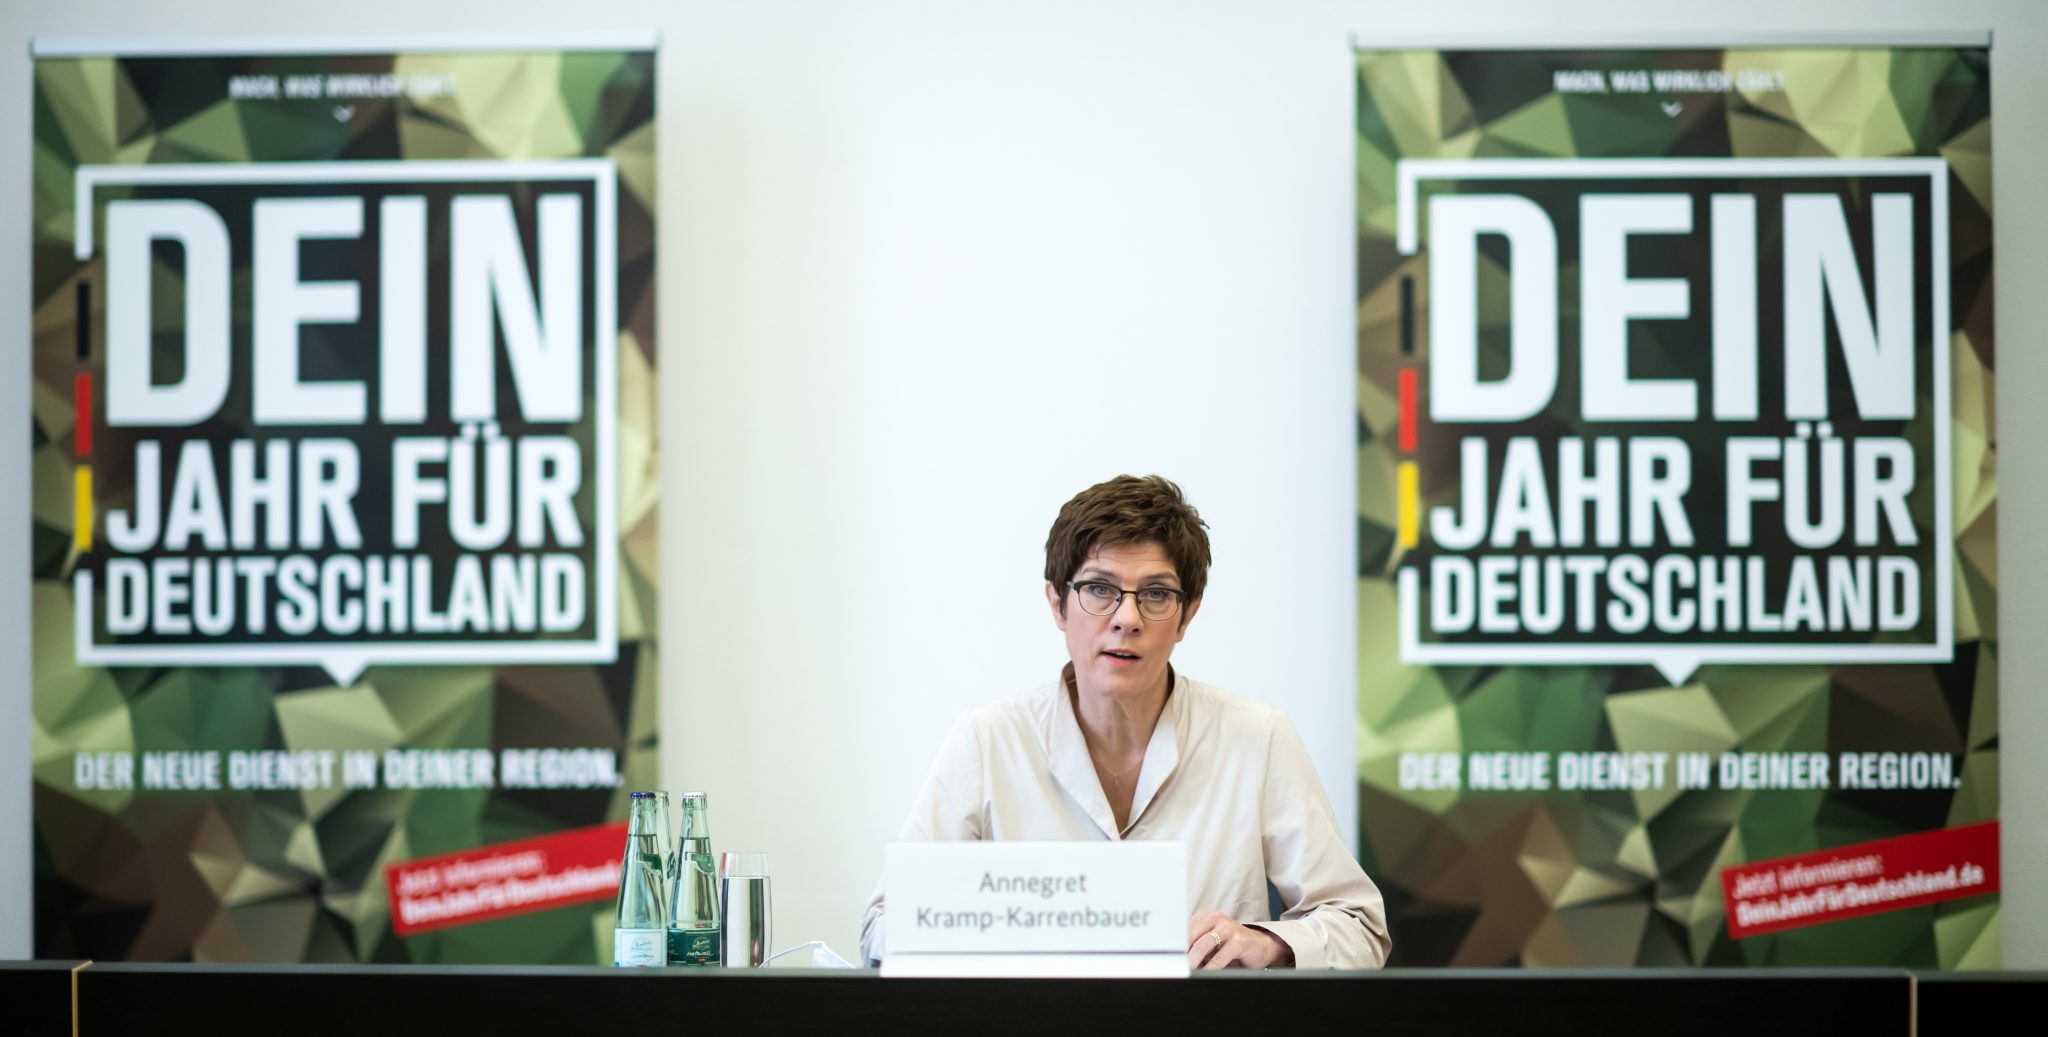 Die Linkspartei kritisiert das Pilotprojekt zum freiwilligen Wehrdienst von Verteidigungsministerin Annegret Kramp-Karrenbauer (CDU) Foto: picture alliance/Bernd von Jutrczenka/dpa